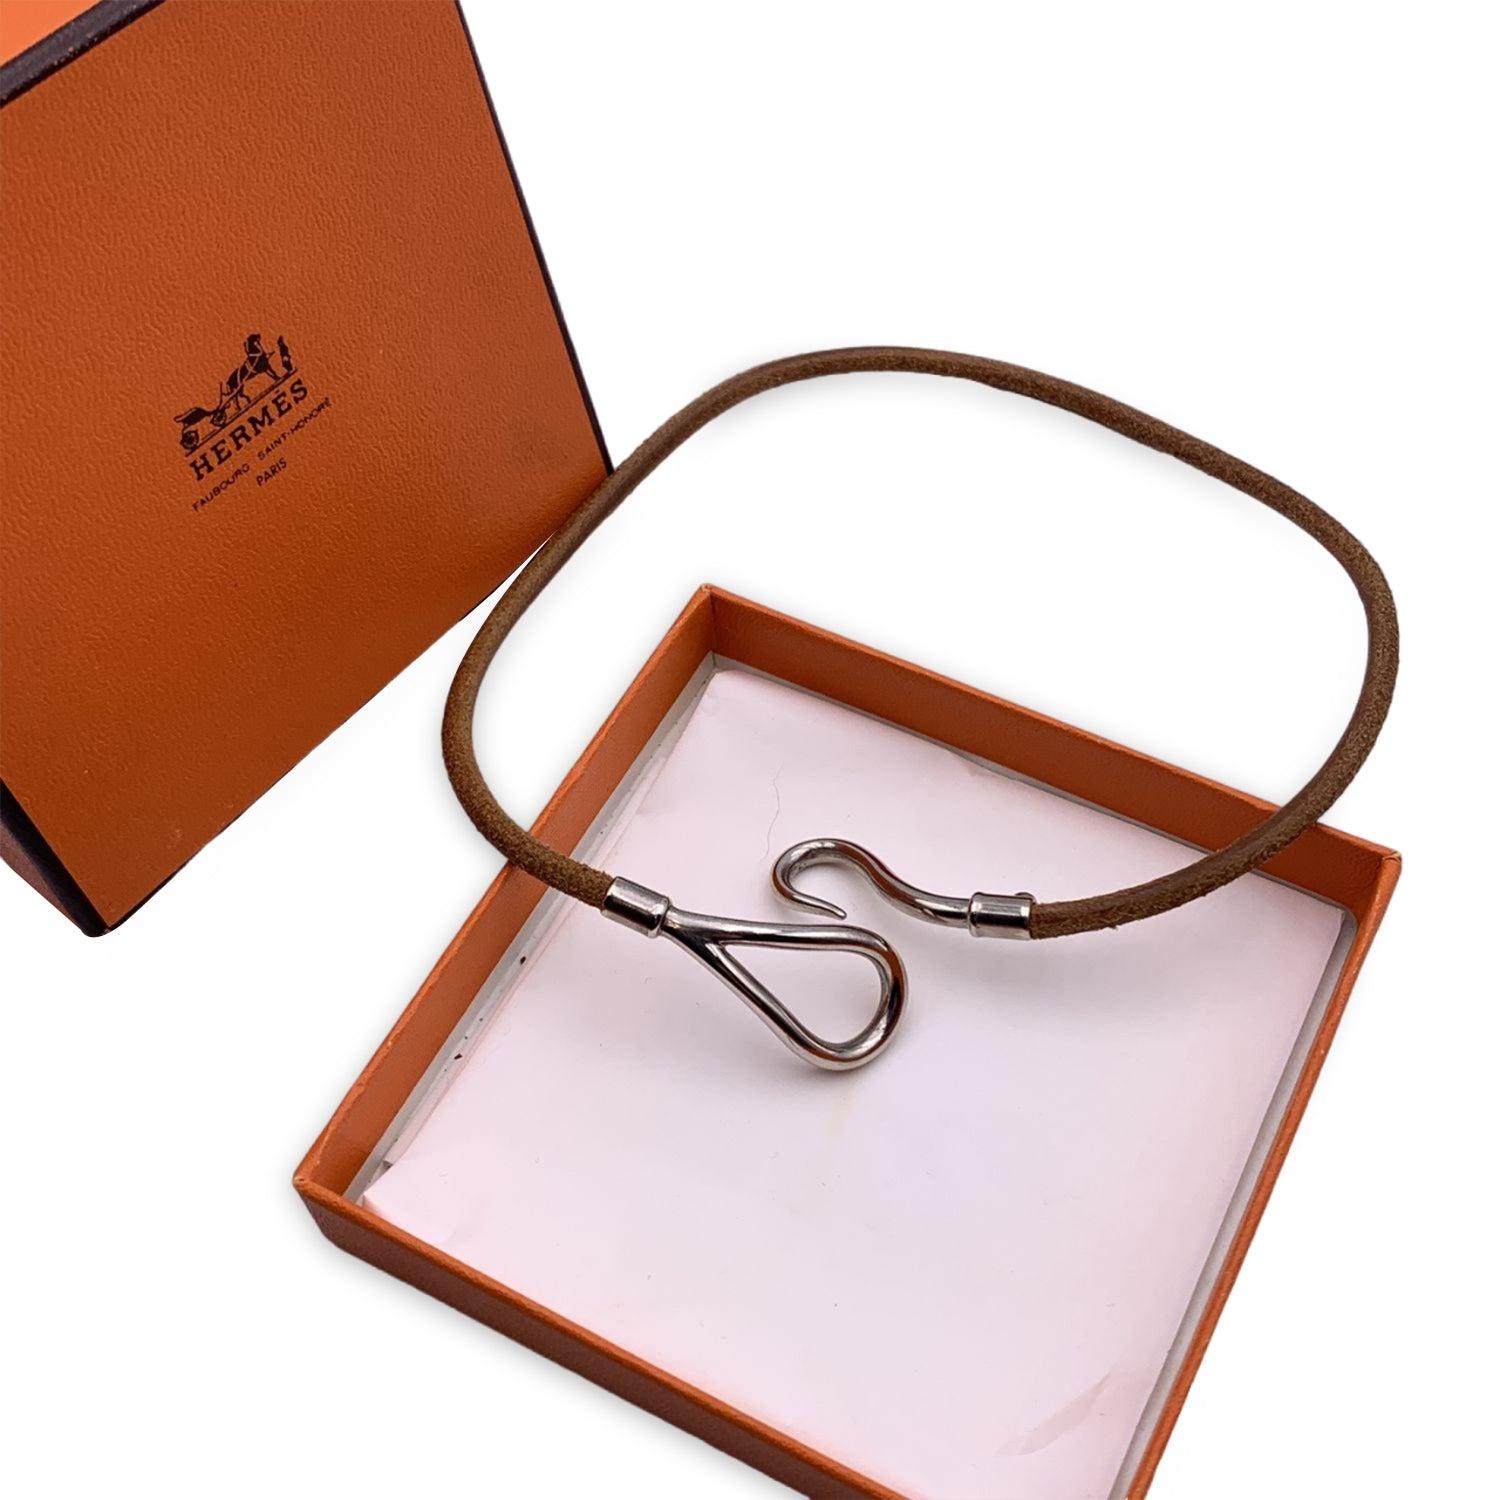 Hermes - Bracelet double tour en cuir tanné - Crochet géant en métal argenté 1